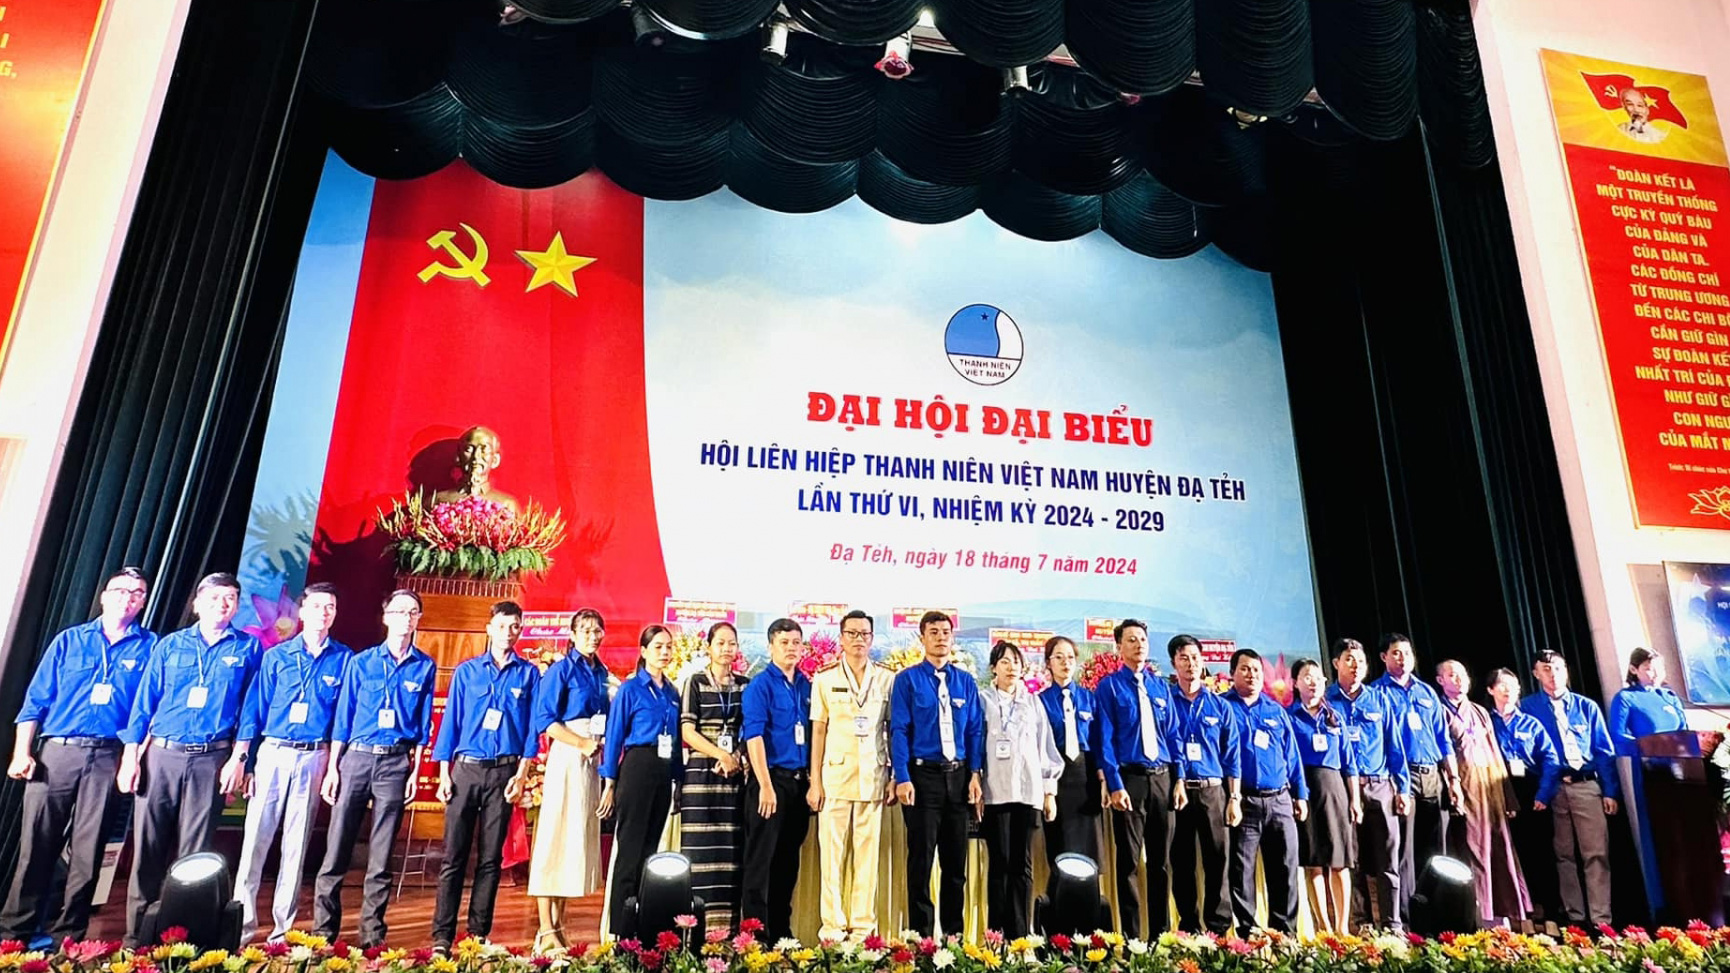 Ra mắt ủy viên Ủy ban Hội LHTN Việt Nam huyện Đạ Tẻh khóa VI, nhiệm kỳ 2024 - 2029